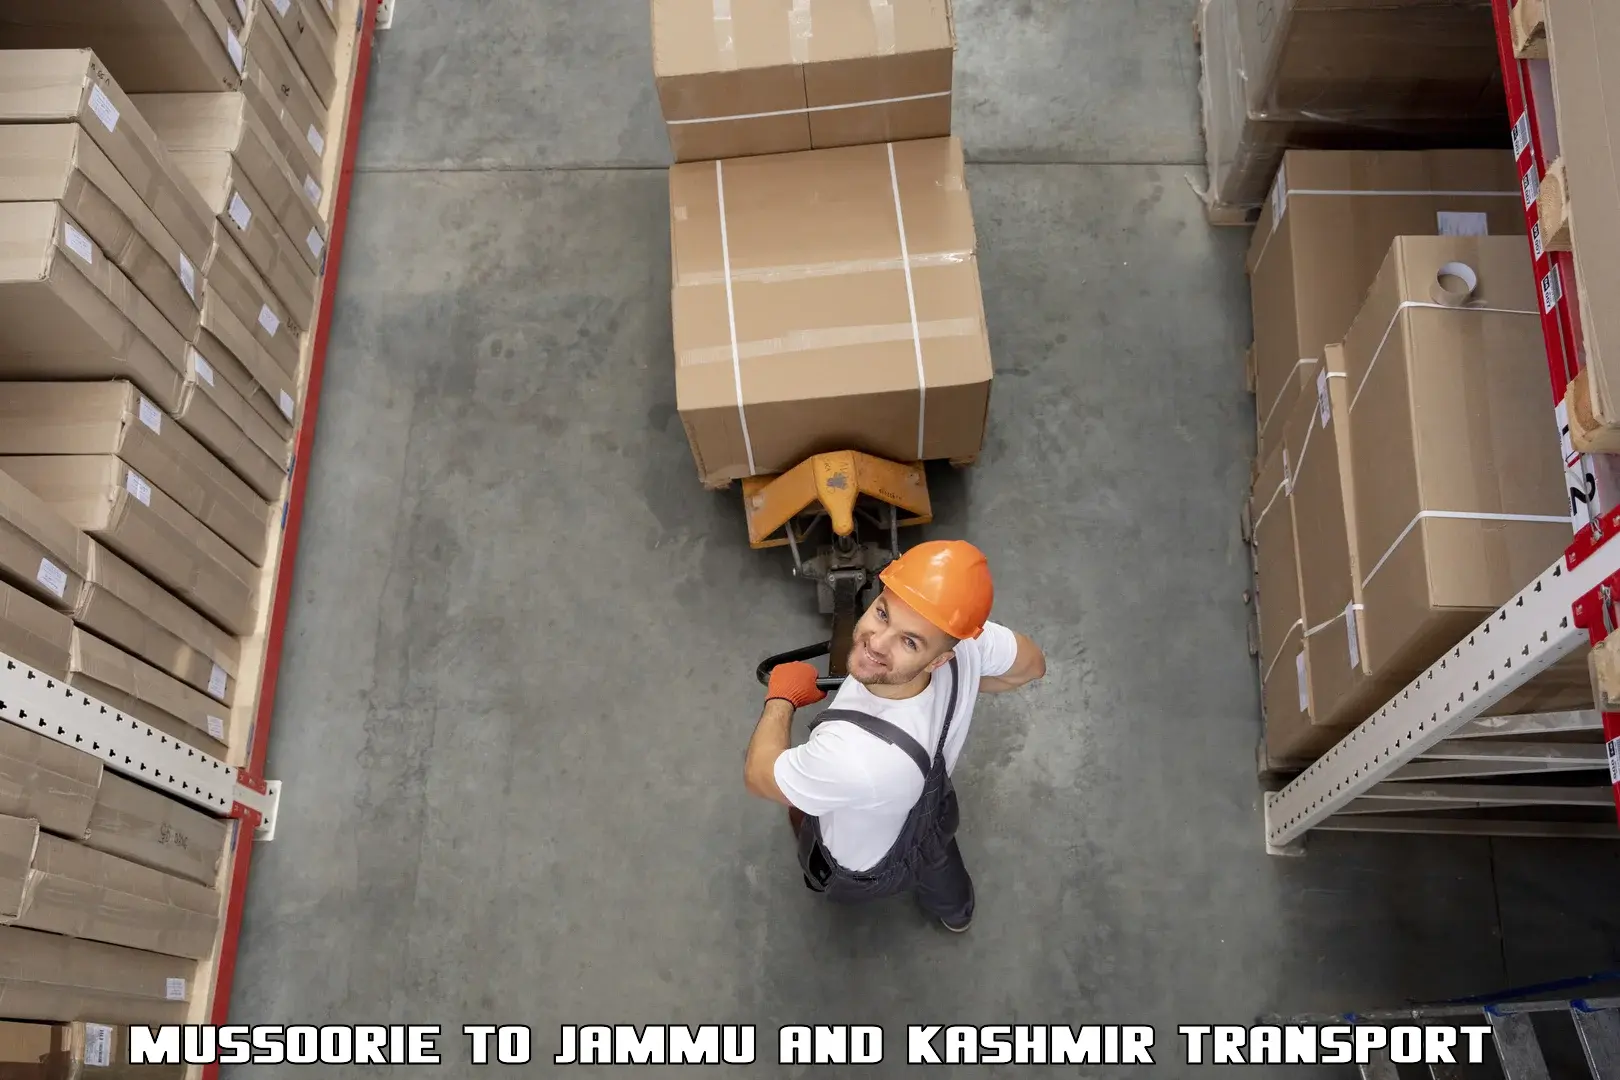 Transport services Mussoorie to Srinagar Kashmir